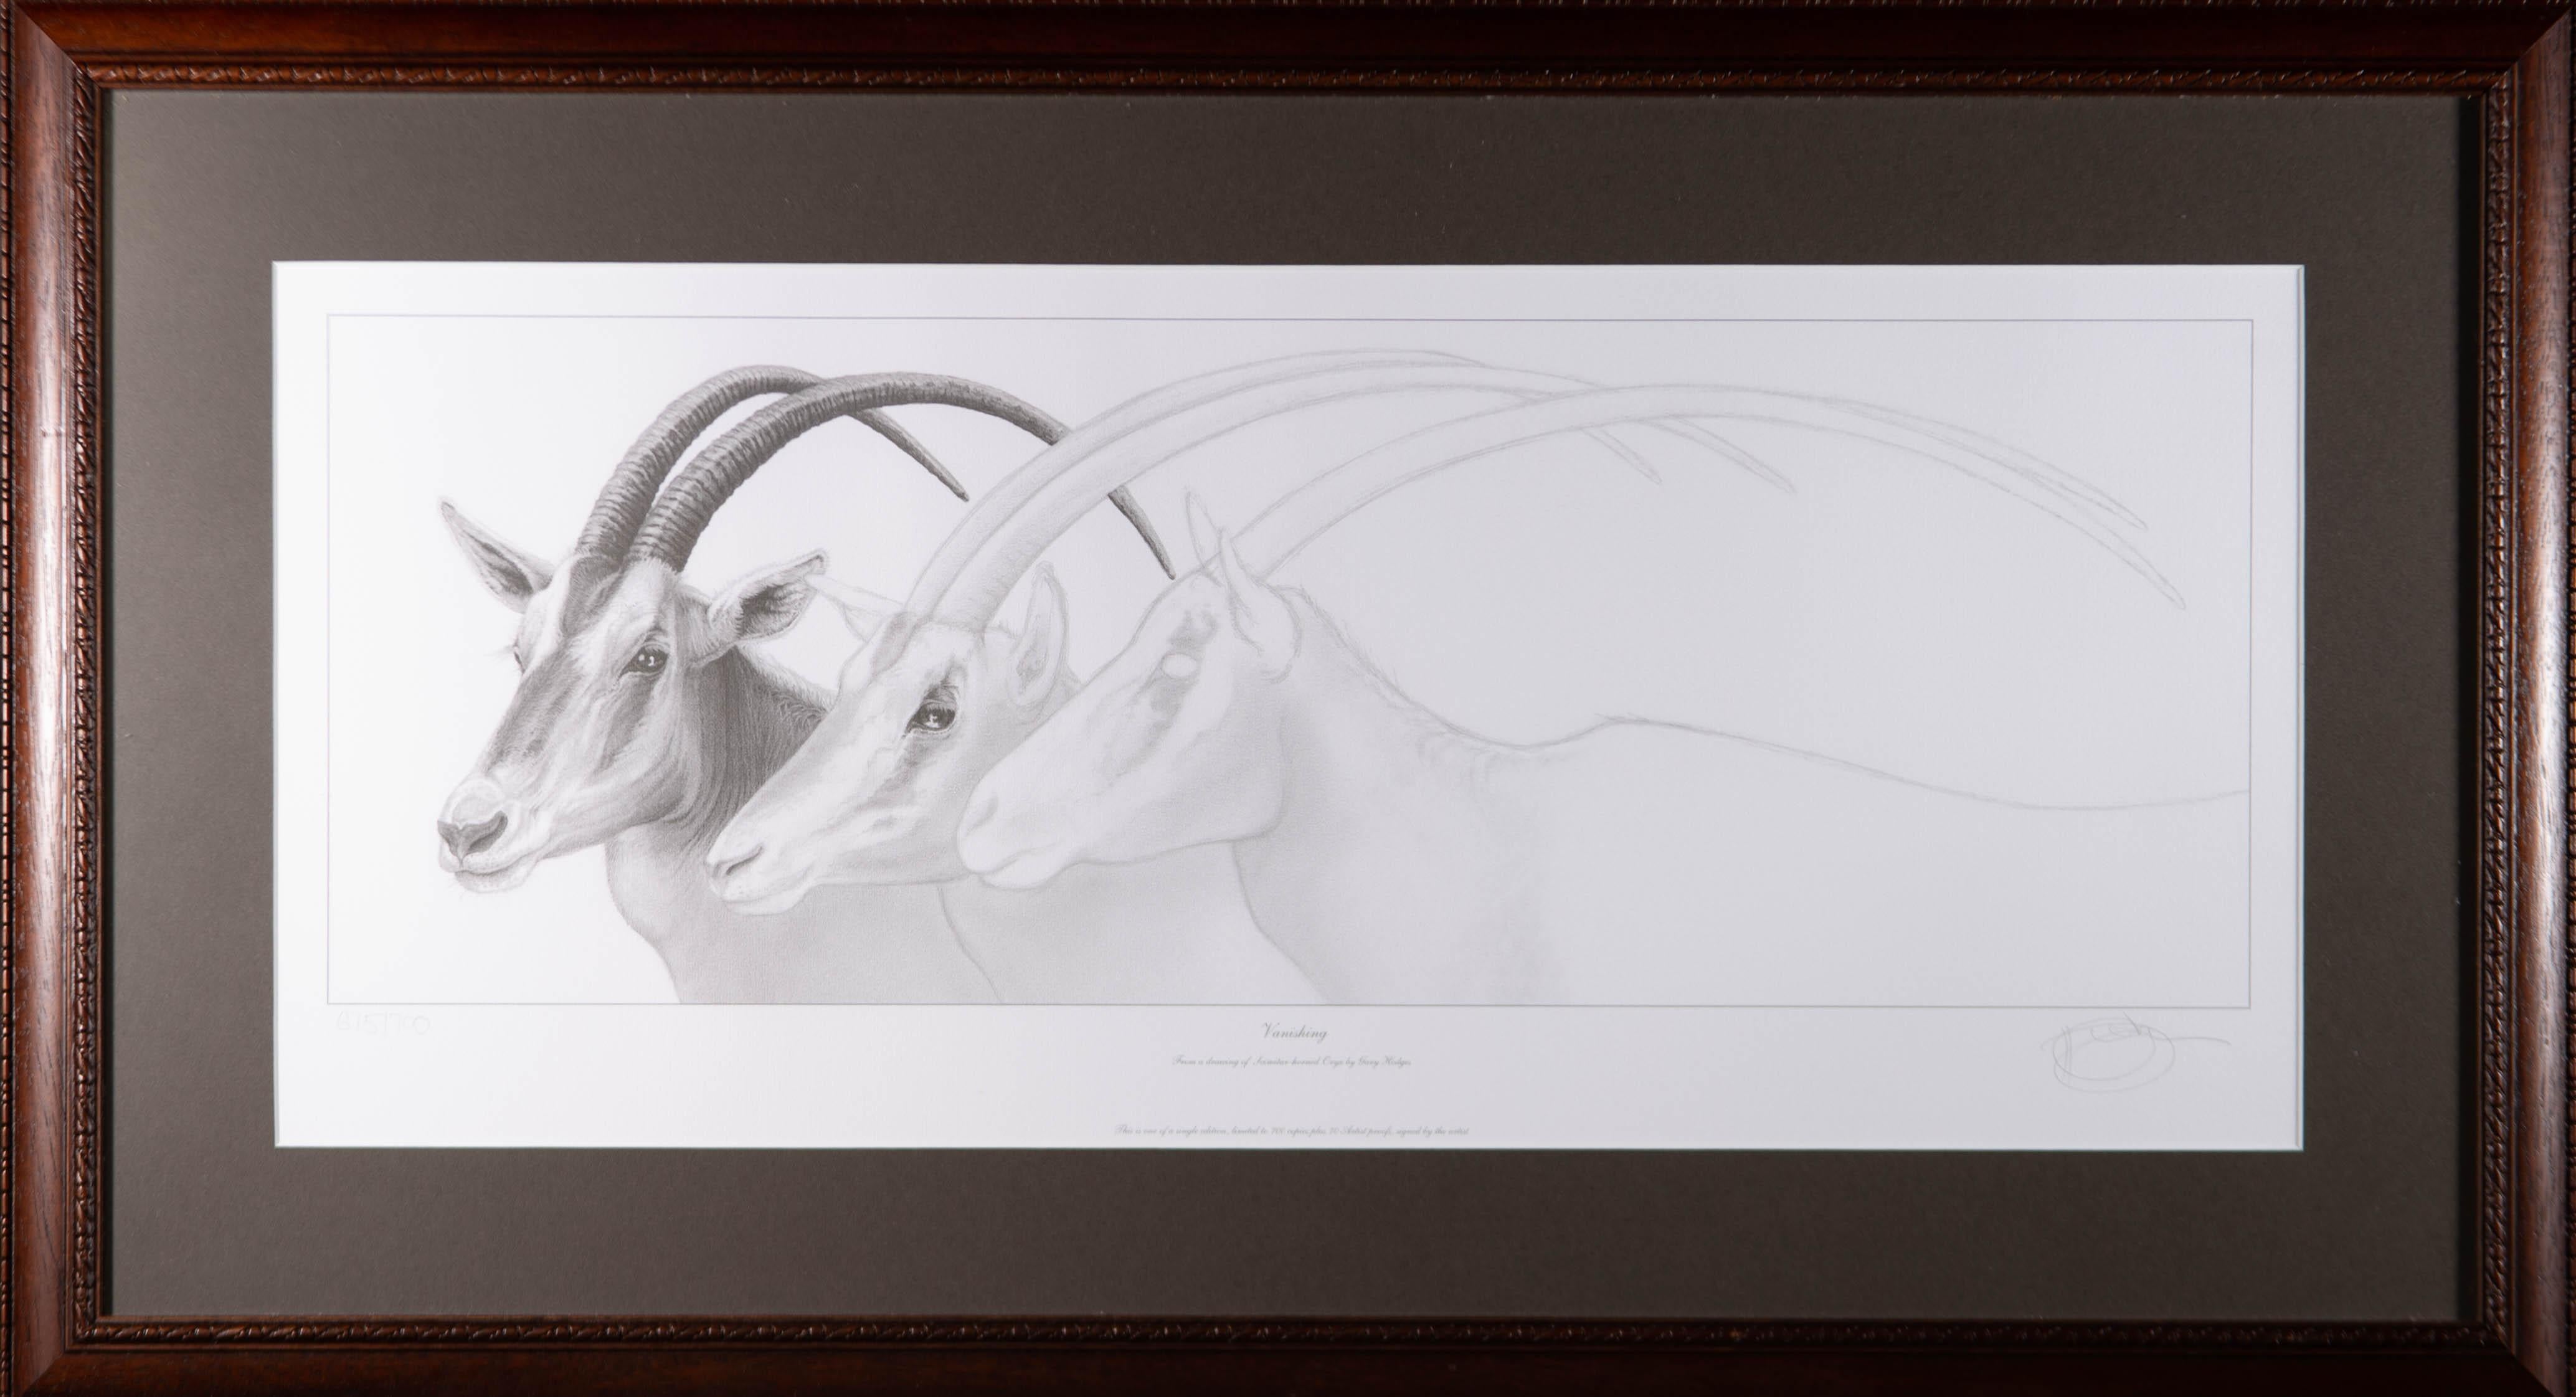 Ein Giclée-Druck in limitierter Auflage (675/700) mit dem Titel "Vanishing" (Verschwinden) nach einer Originalzeichnung eines Oryx mit Säbelhorn des britischen Künstlers Gary Hodges. Der Künstler hat in der rechten unteren Ecke in Graphit signiert.